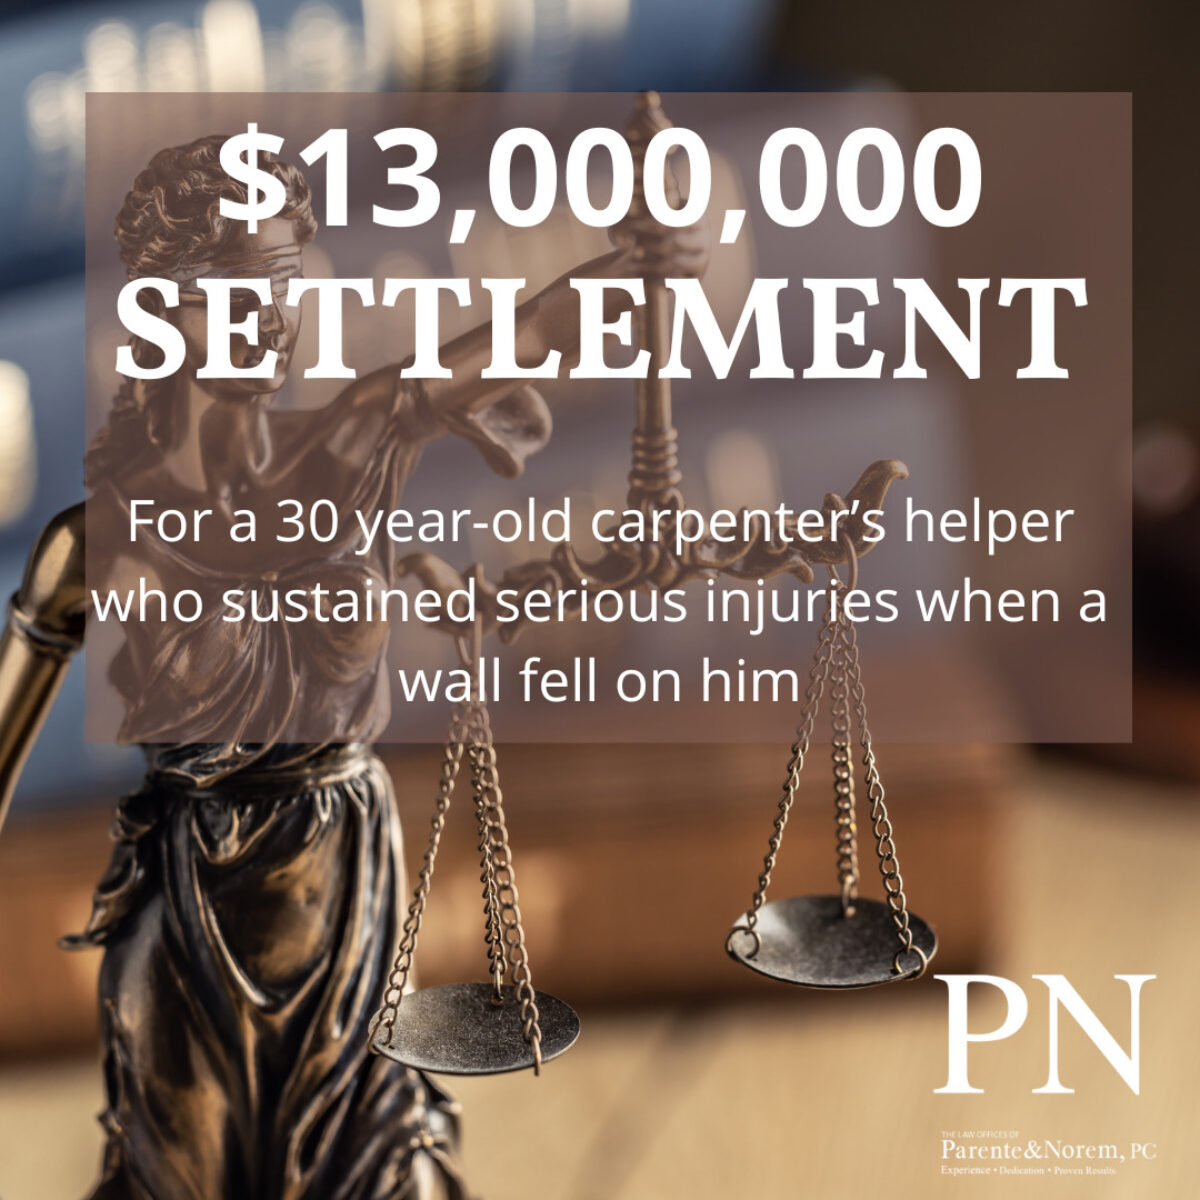 $13,000,000 Settlement after Wall Falls on Carpenter’s Helper